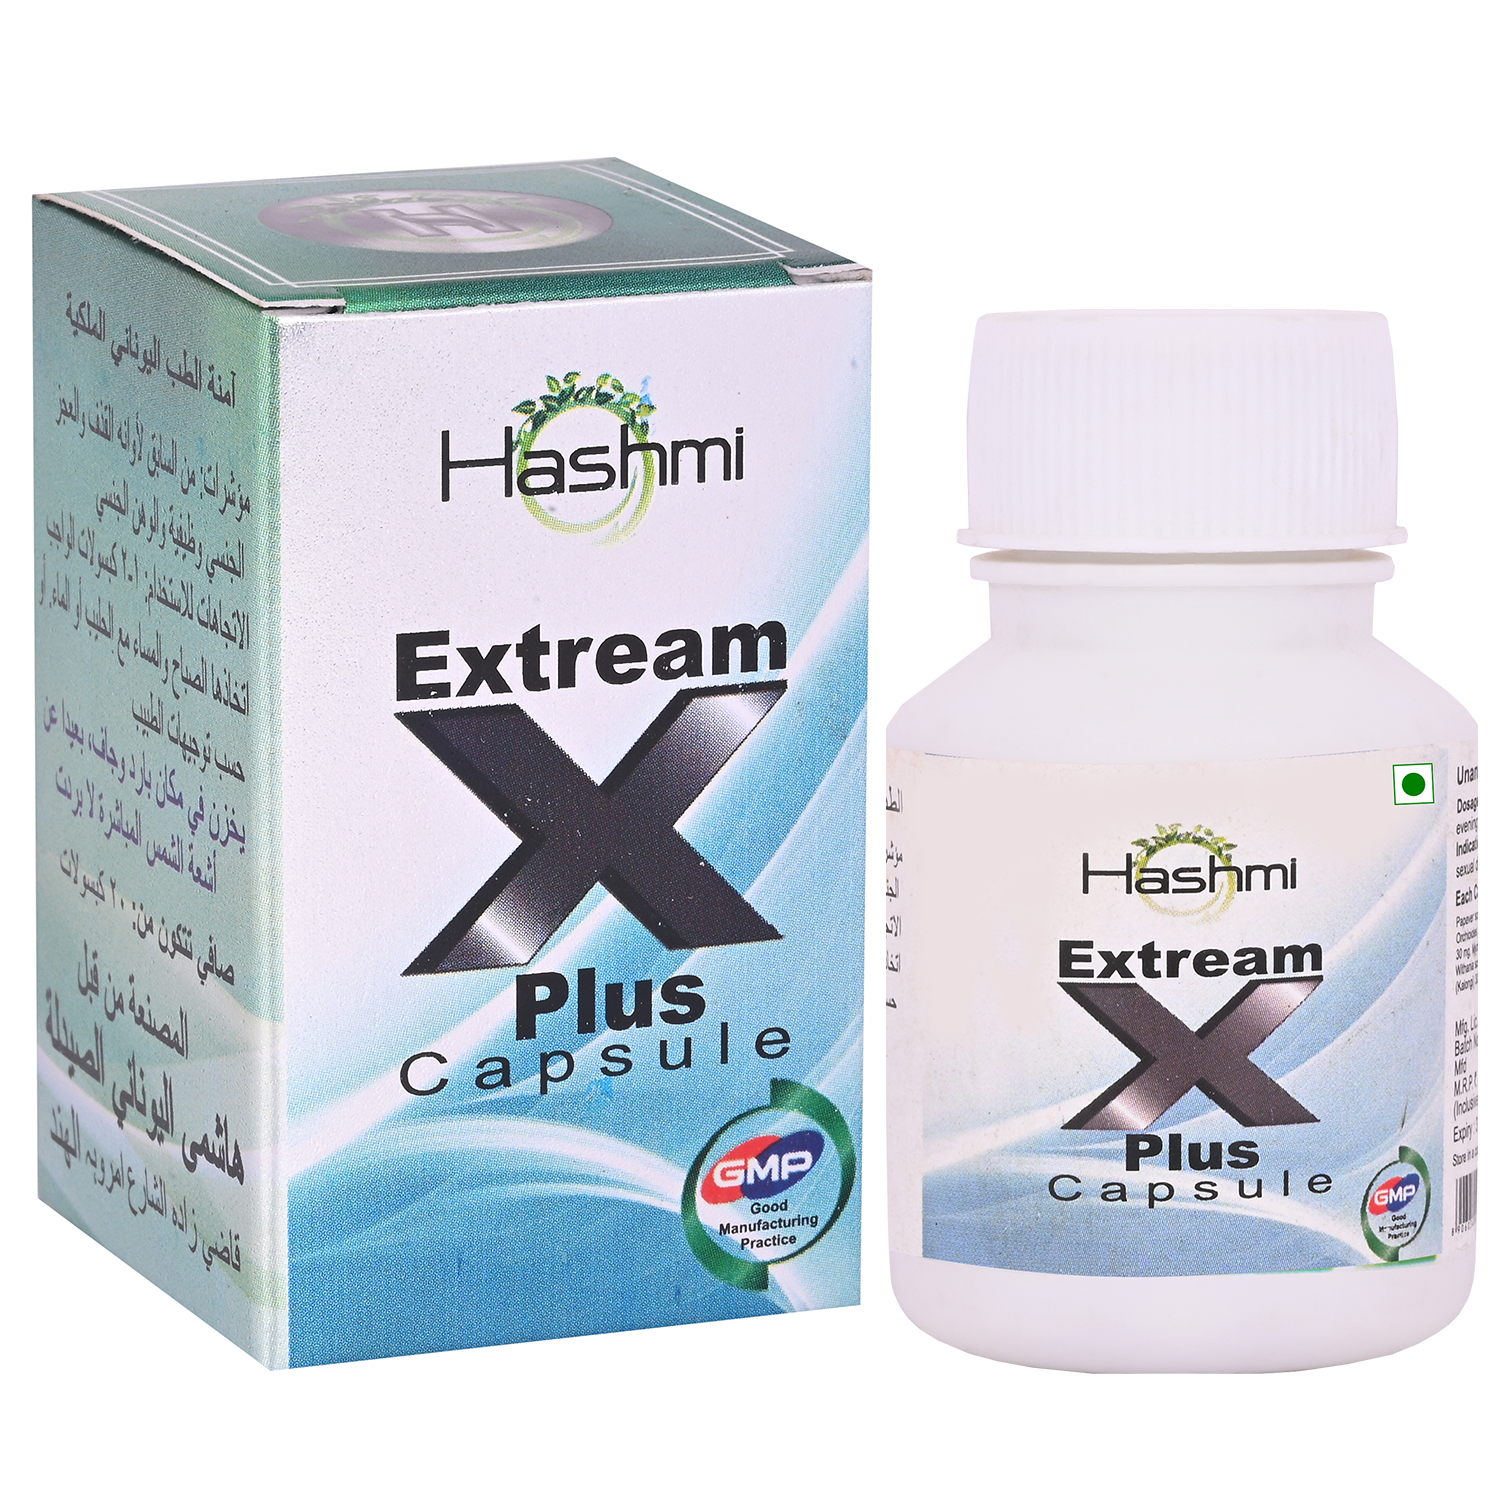 Hashmi Extream x plus capsule